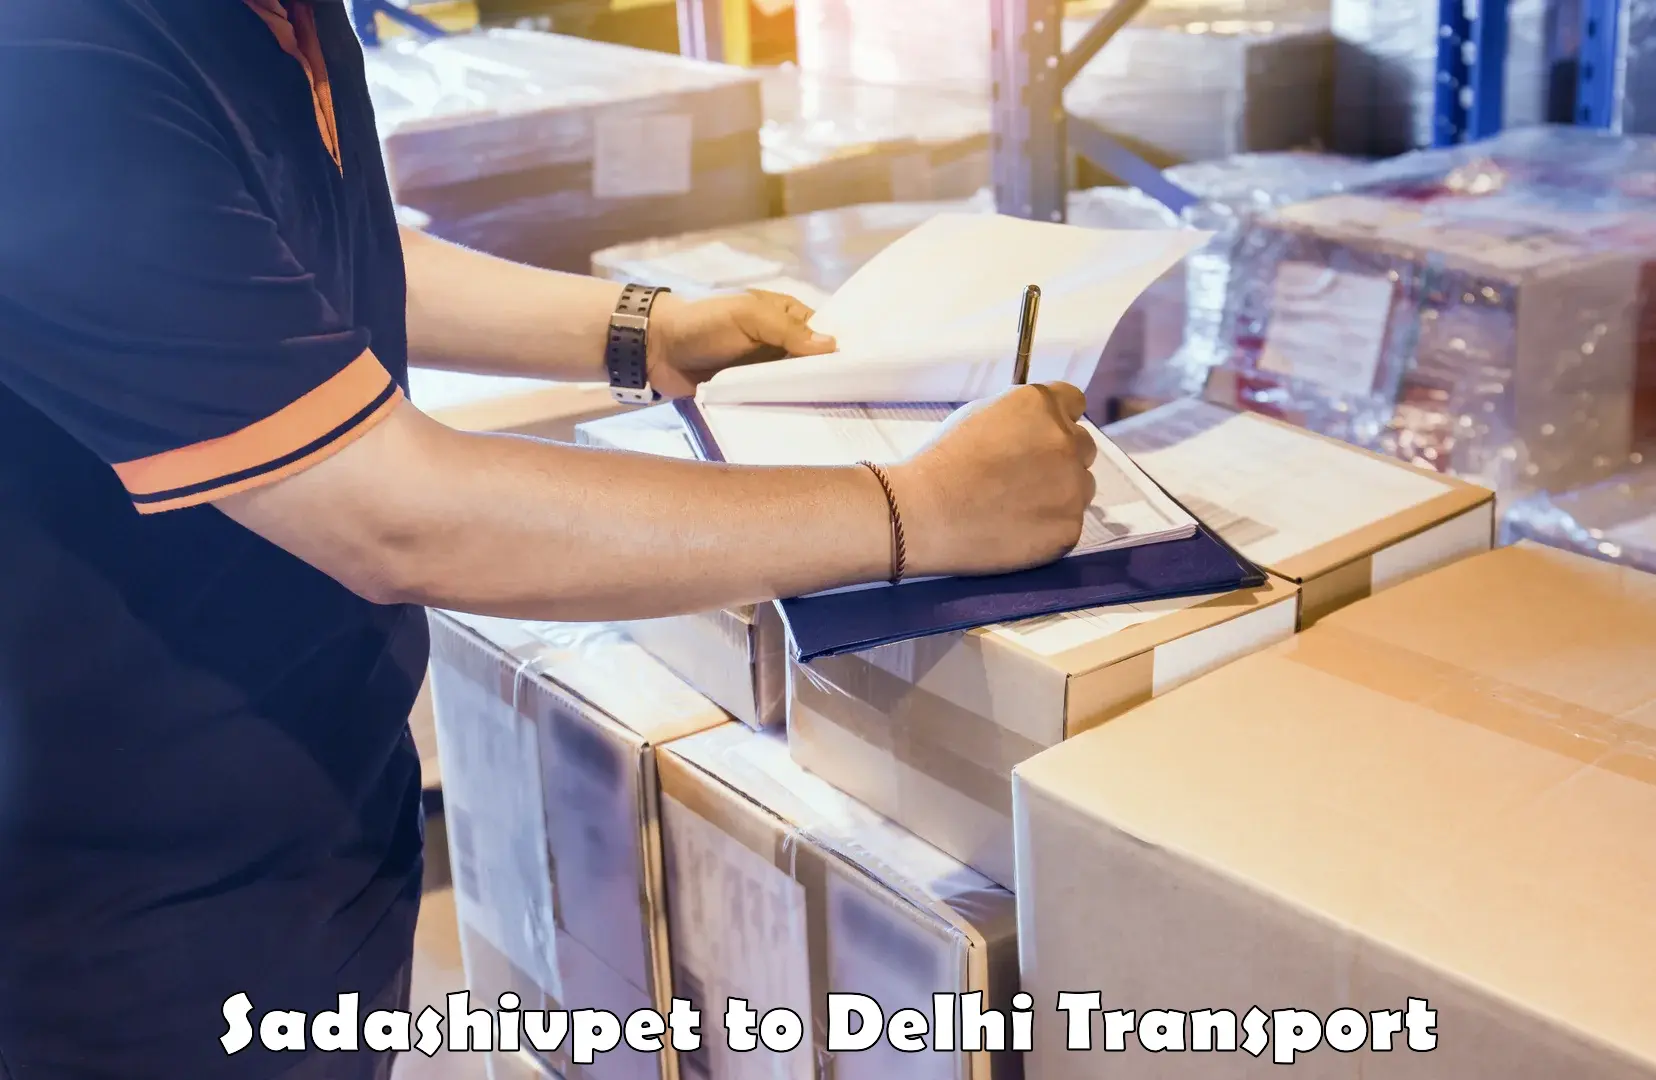 Truck transport companies in India Sadashivpet to Sarojini Nagar